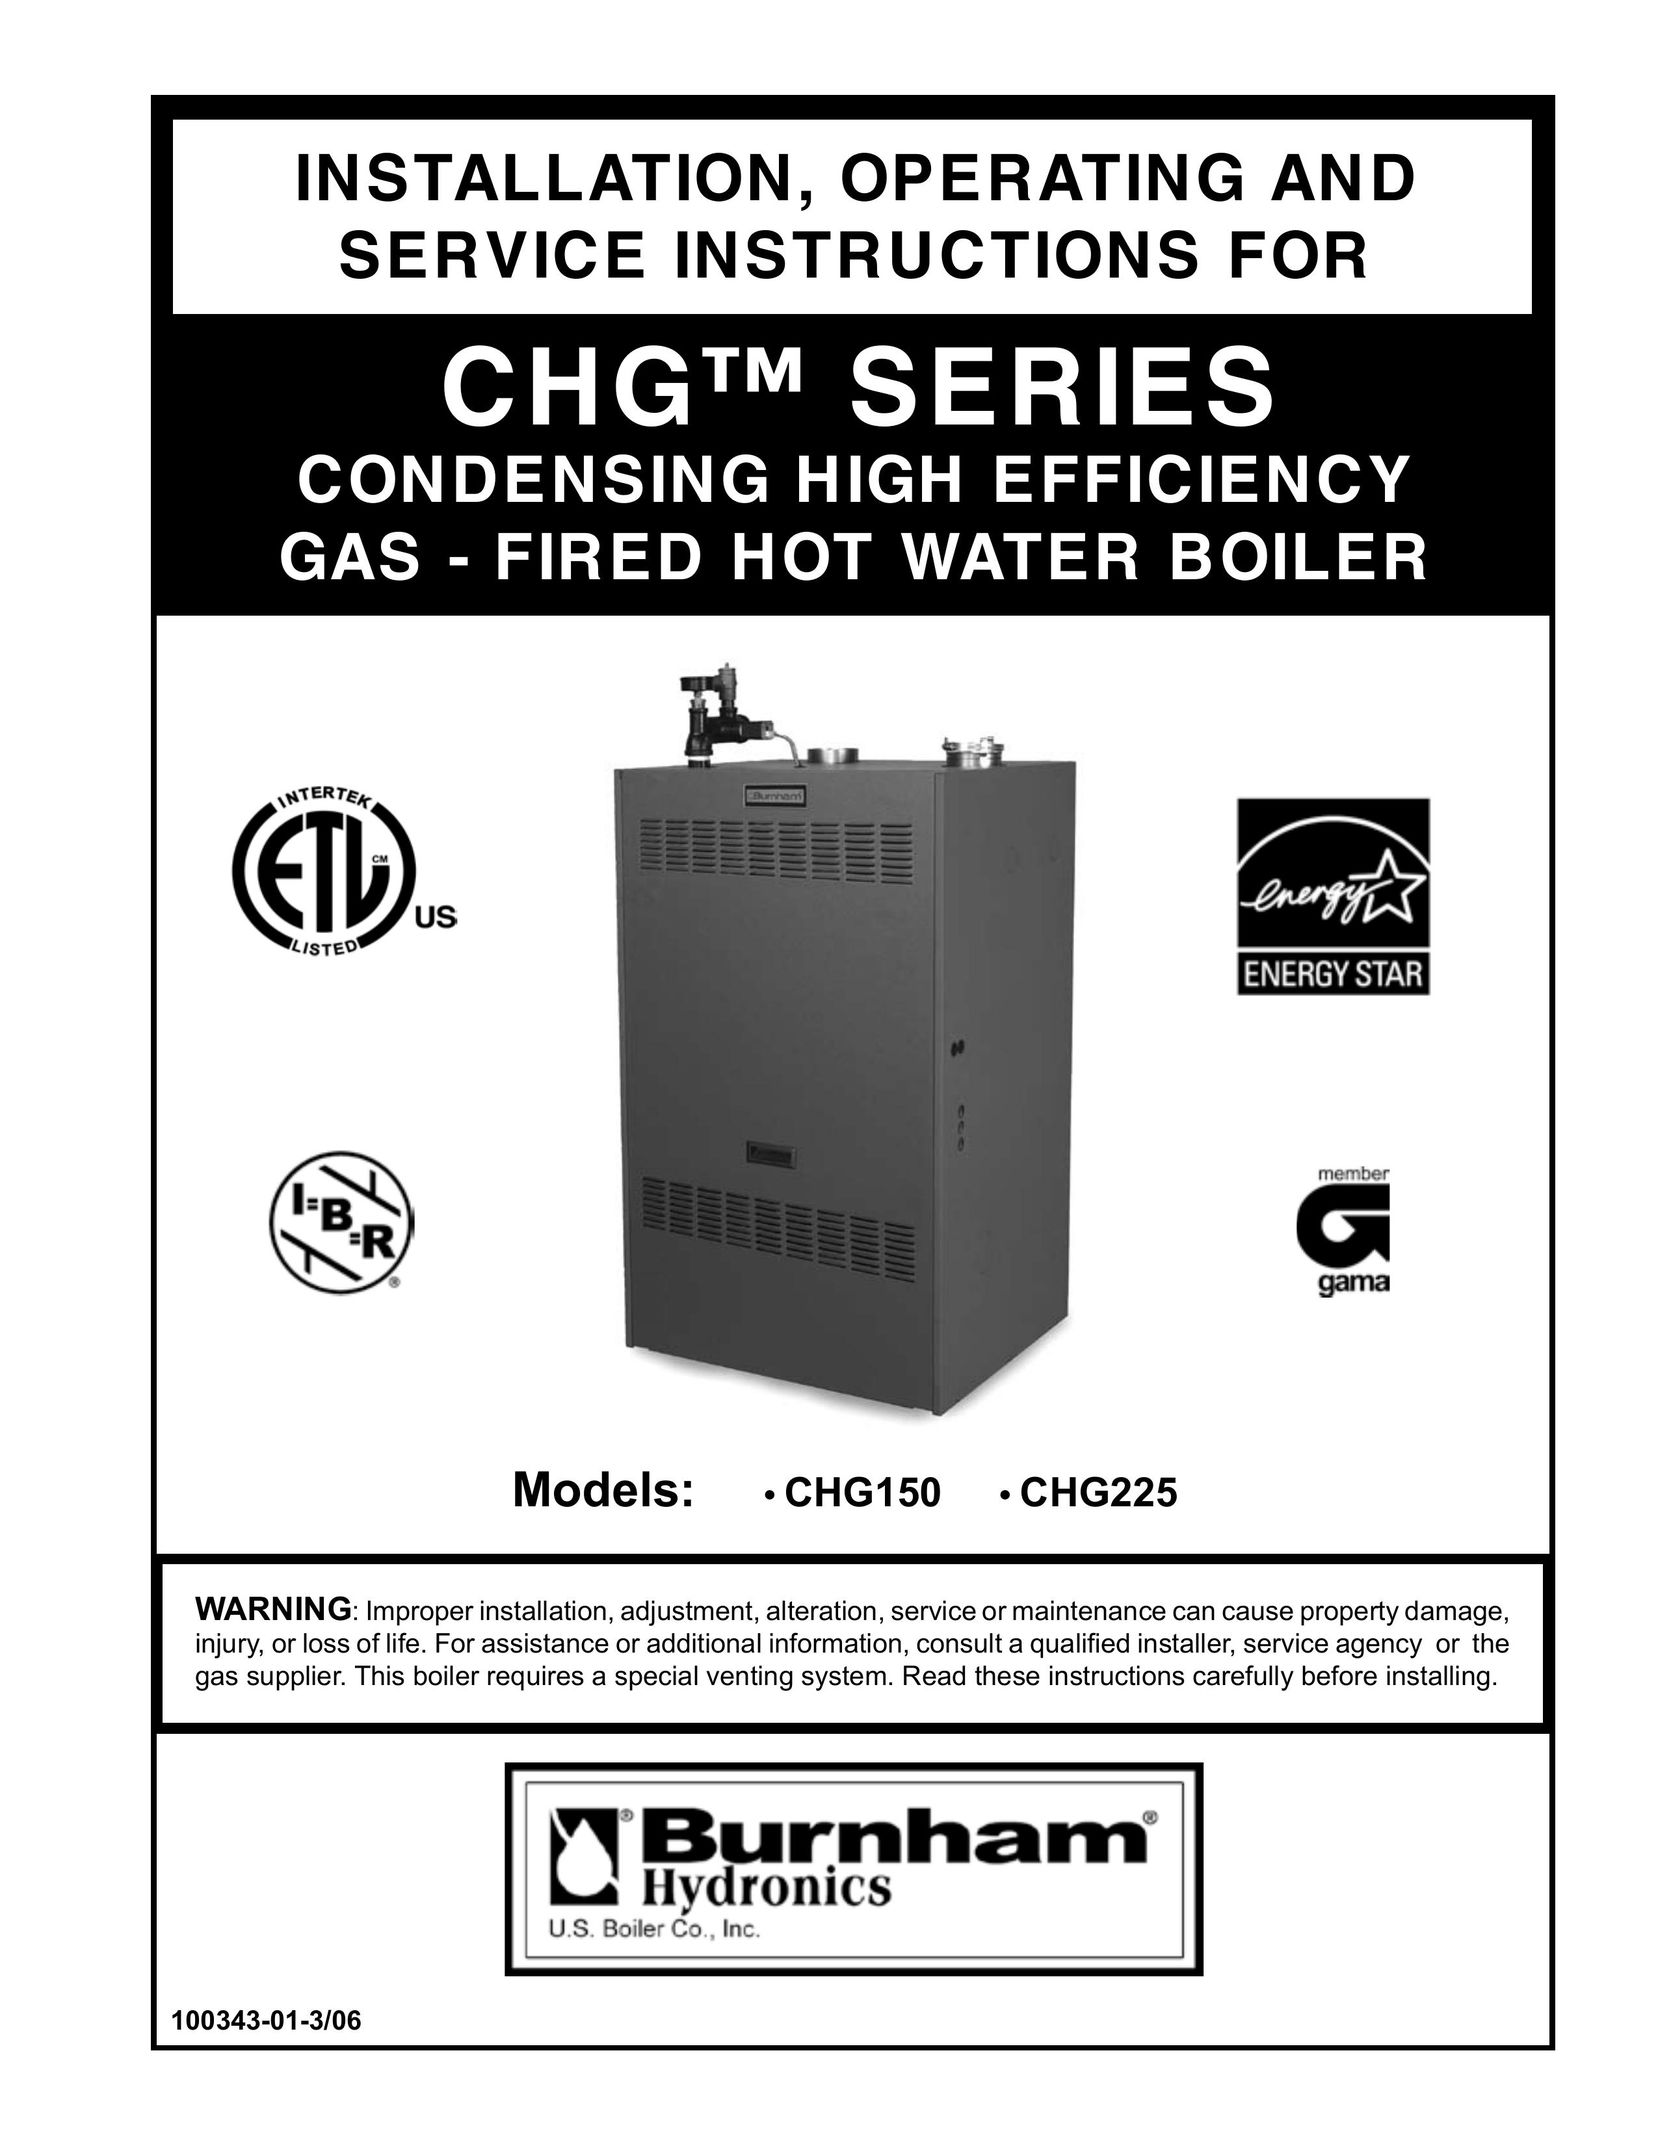 Burnham CHG225 Boiler User Manual